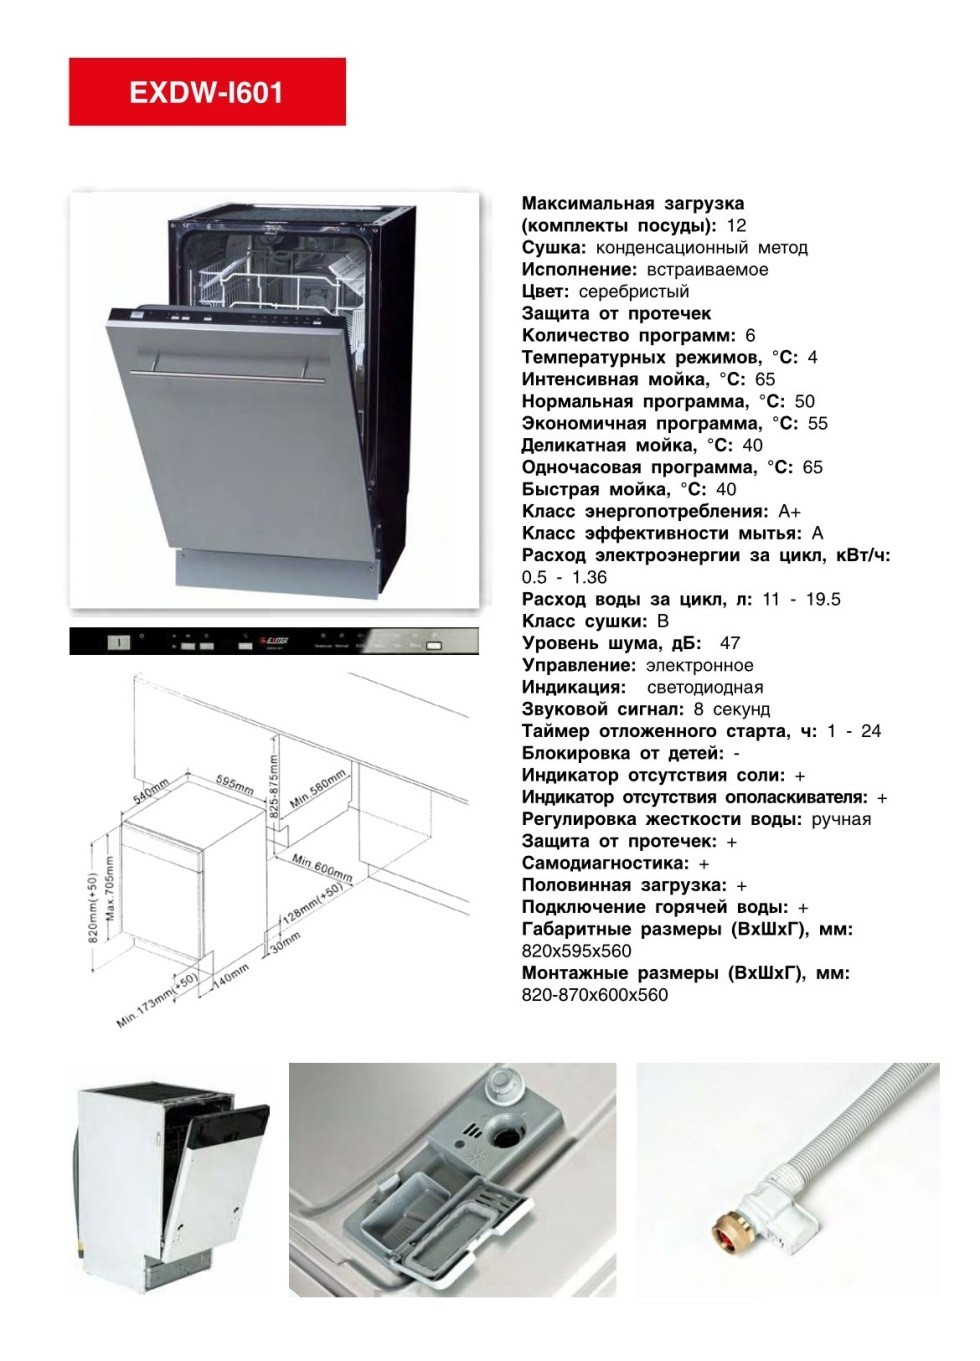 Посудомоечная машина EXITEQ. Продажа встраиваемой техники в Борисове недорого